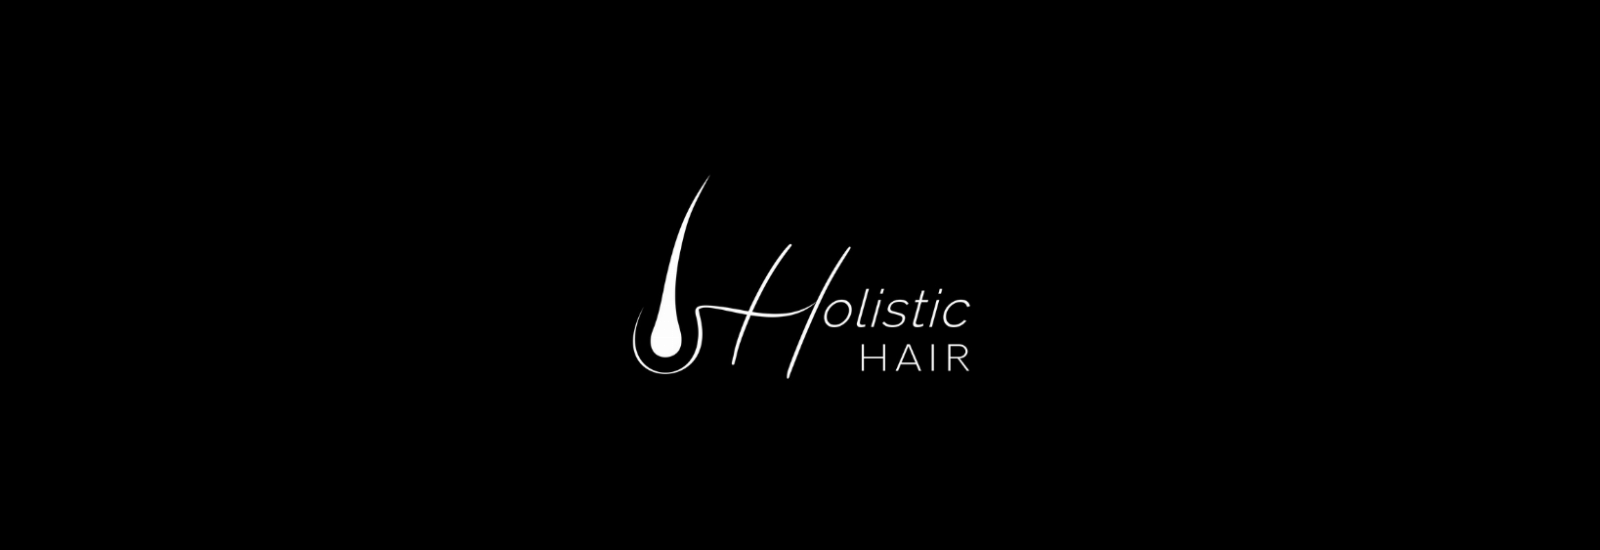 Holistic Hair